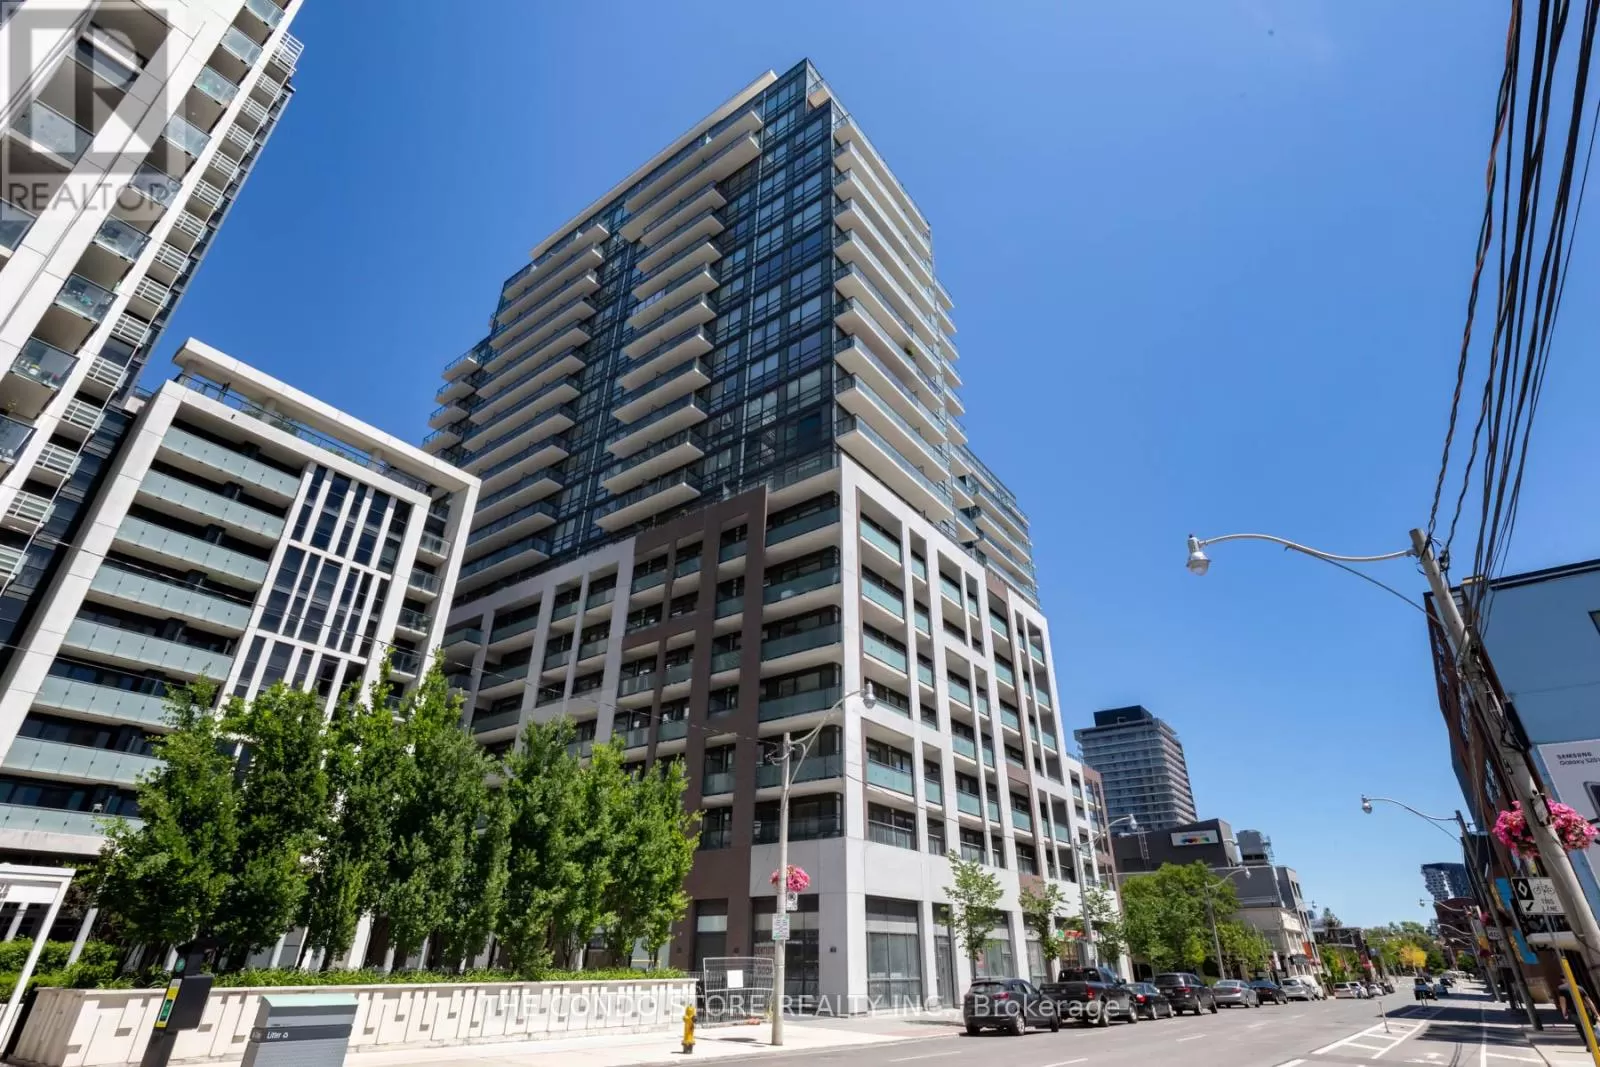 Apartment for rent: 1105 - 460 Adelaide Street E, Toronto, Ontario M5A 0E7